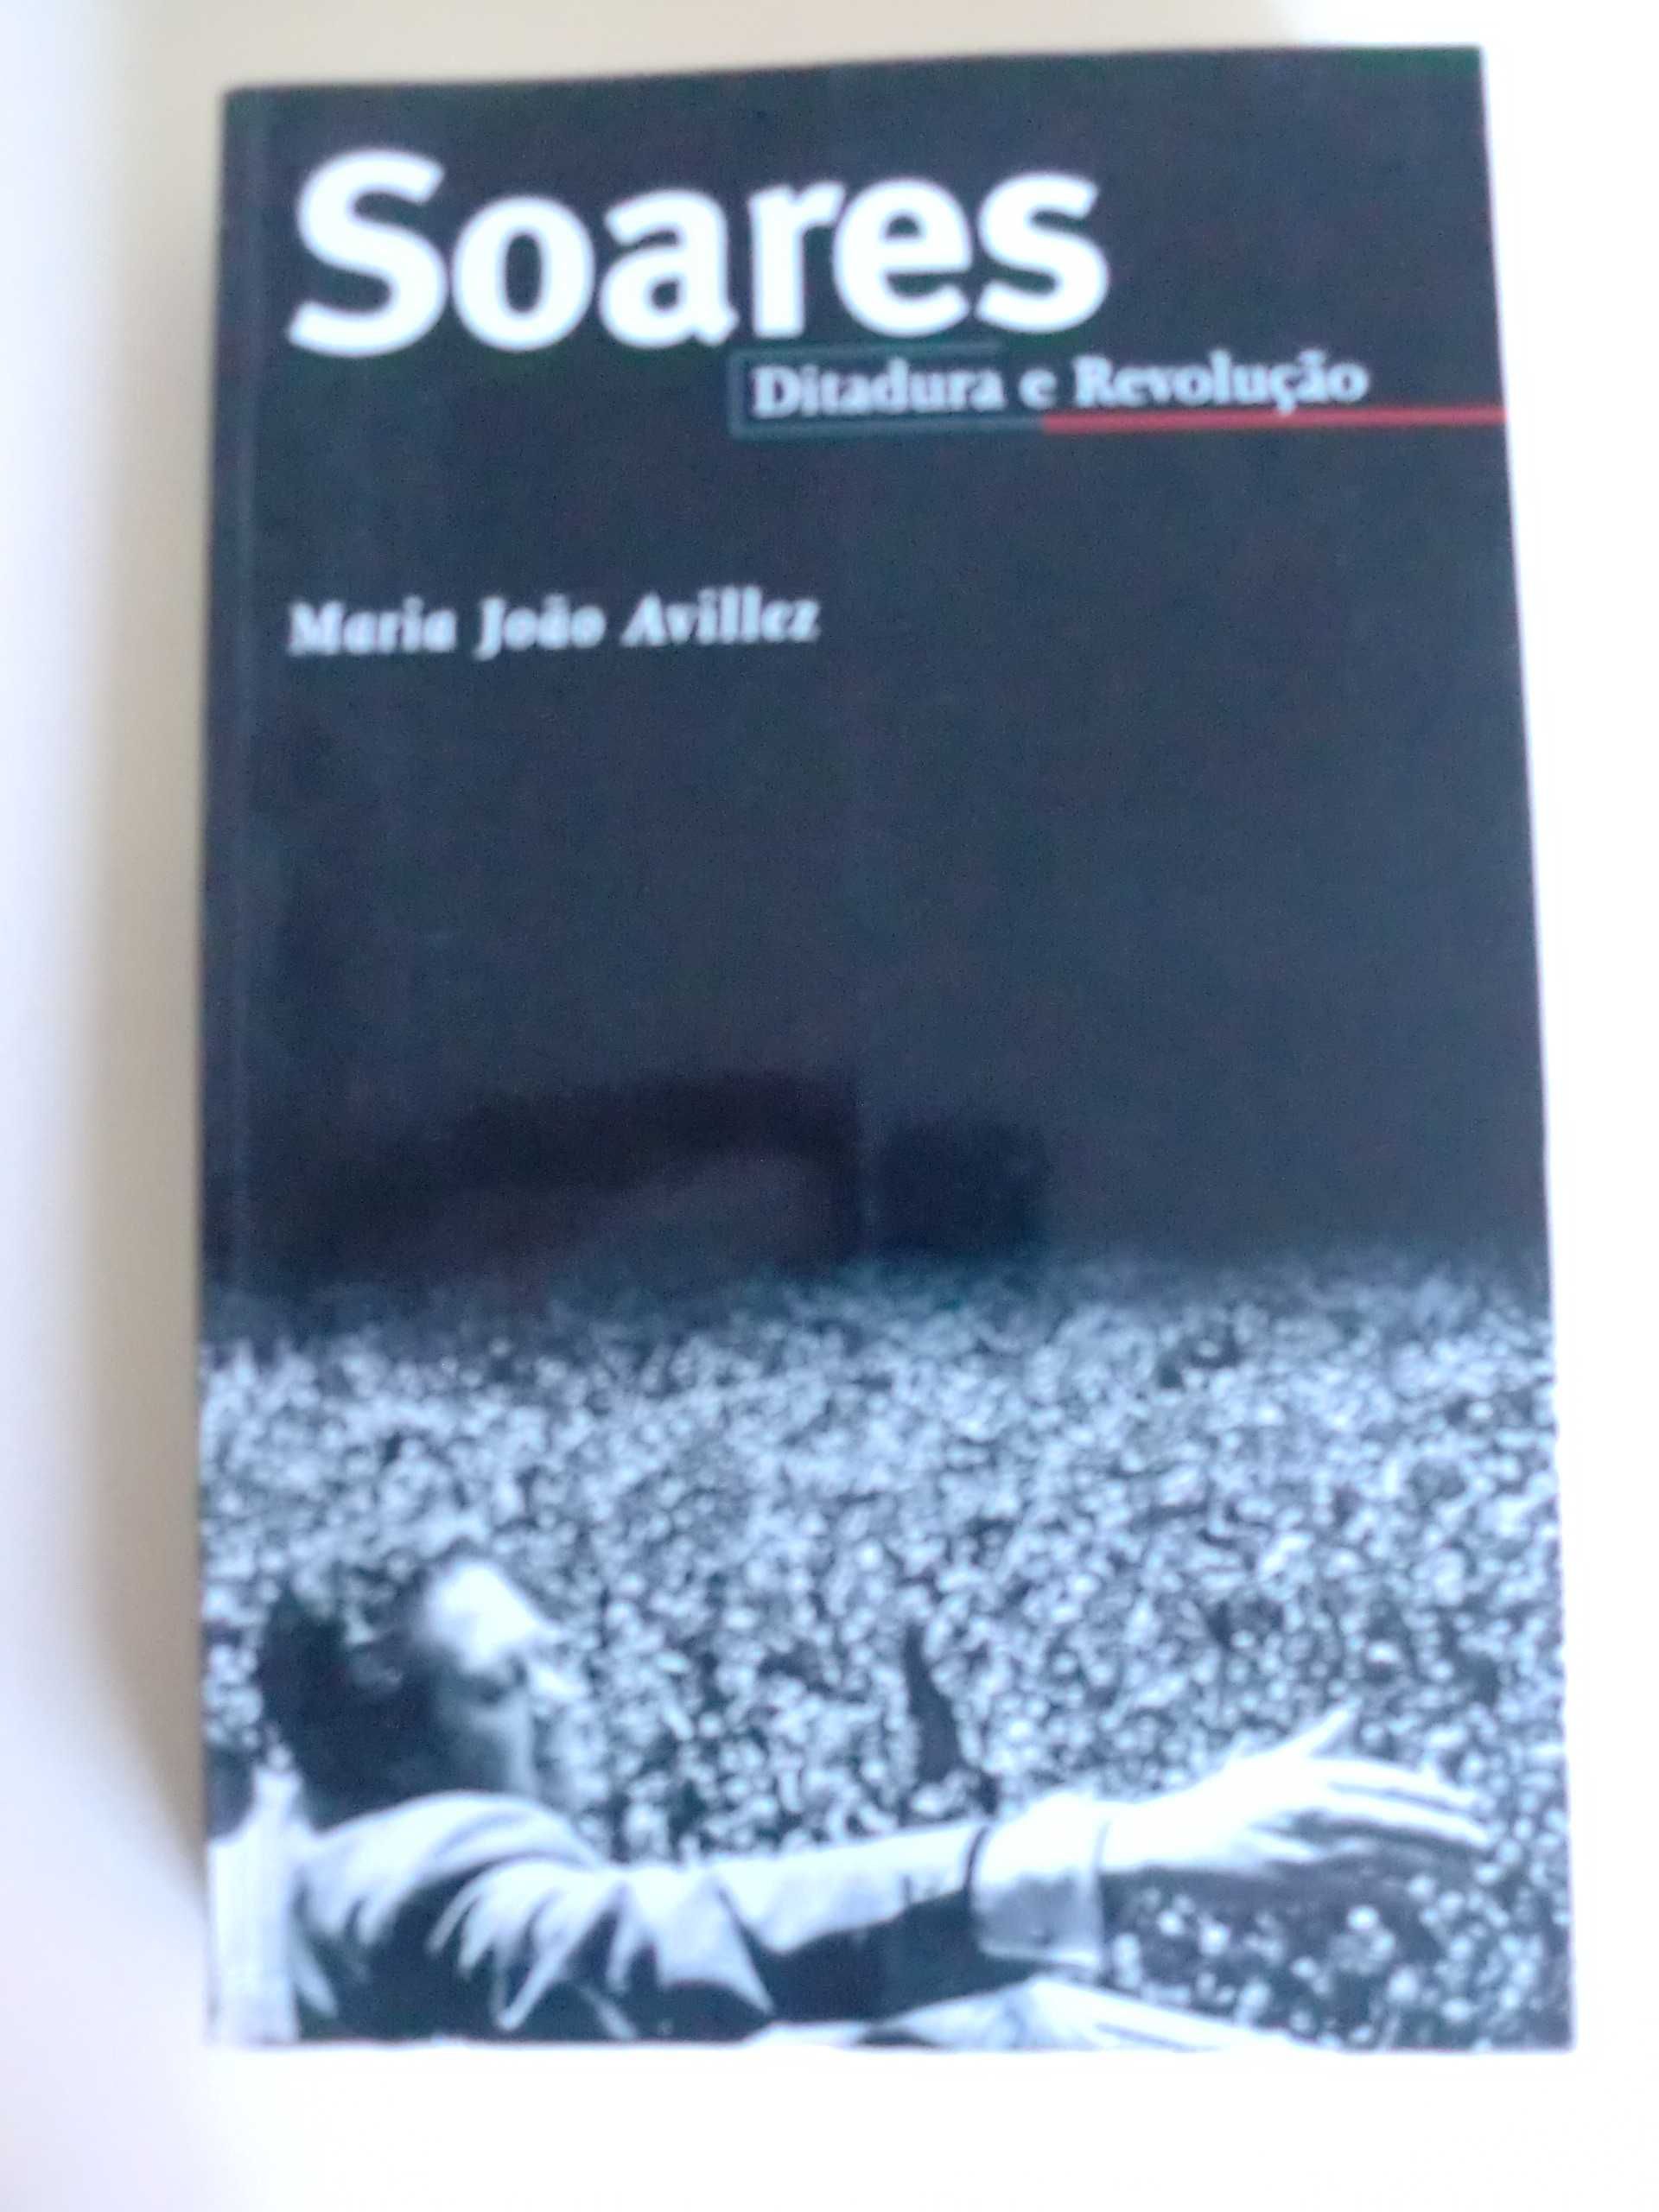 Soares
de Maria João Avillez